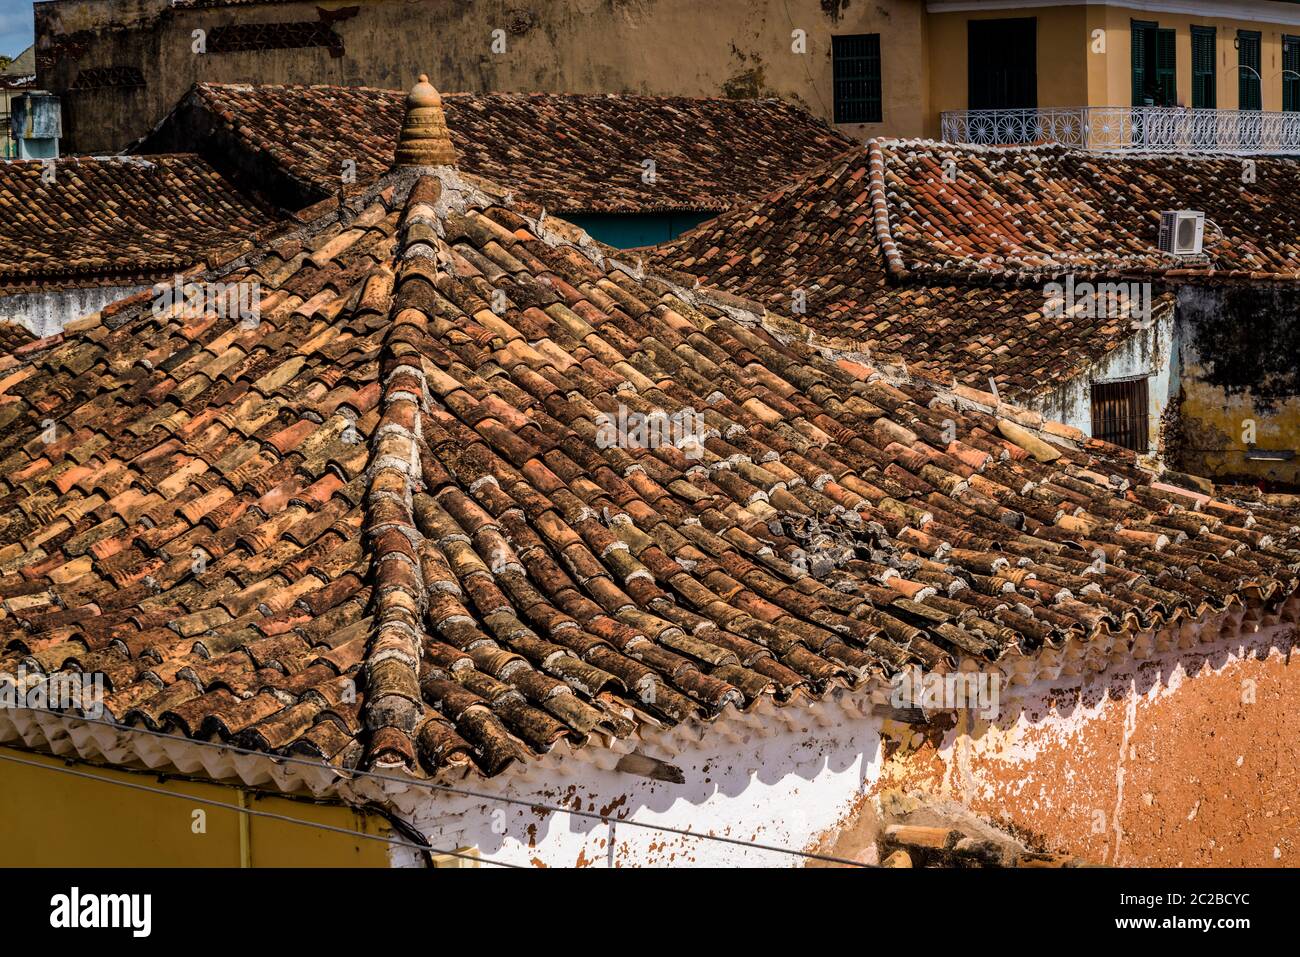 Vieux toits de style espagnol architecture coloniale dans le centre-ville, Trinidad, Cuba Banque D'Images